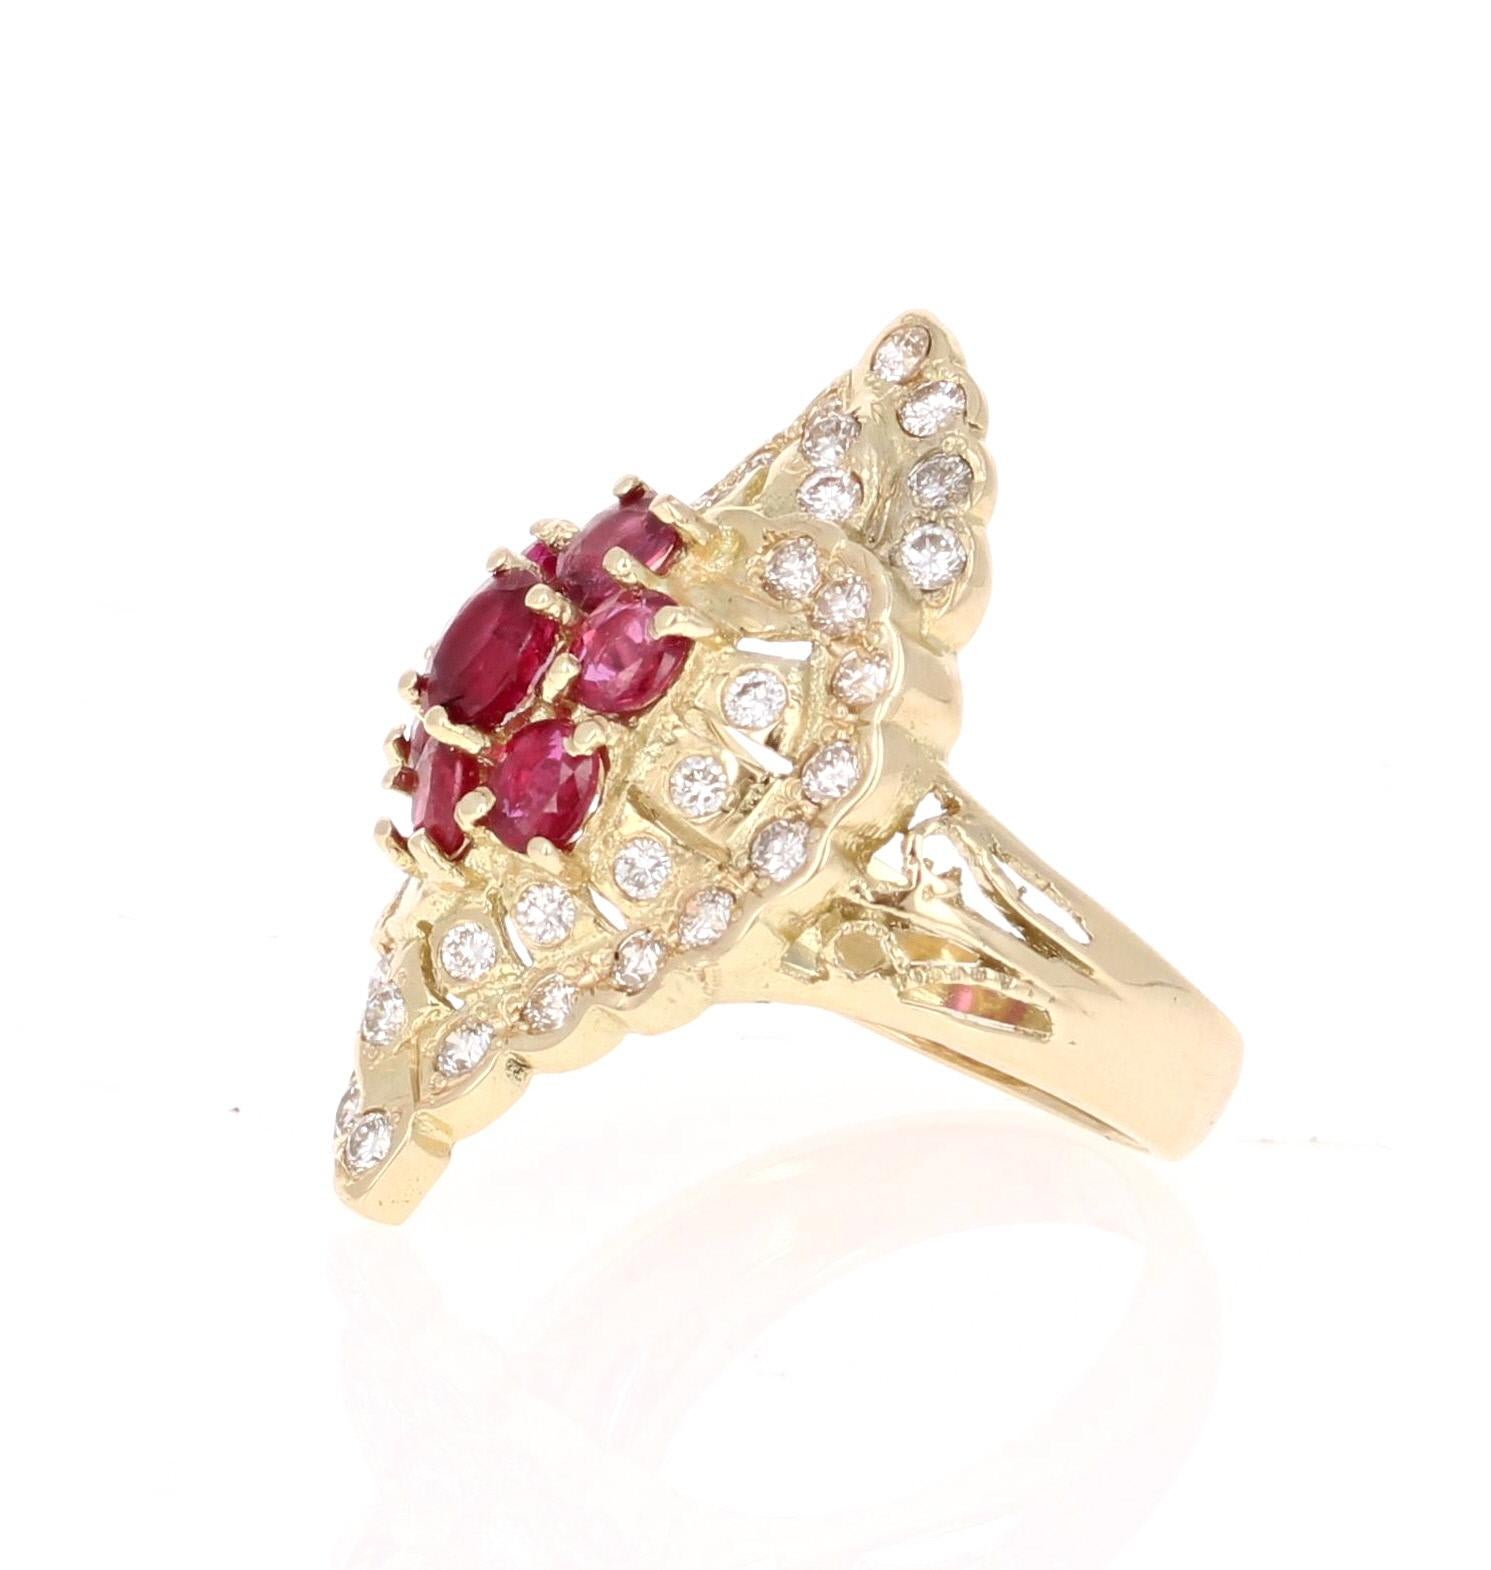 Dieser viktorianisch inspirierte Ring ist wirklich eine einzigartige Vintage-Schönheit! 

Es gibt 7 Oval Cut Burmese Rubine in einer Blume wie Design in der Mitte des Rings, die 1,46 Karat wiegen geclustert. Außerdem gibt es 40 Diamanten im